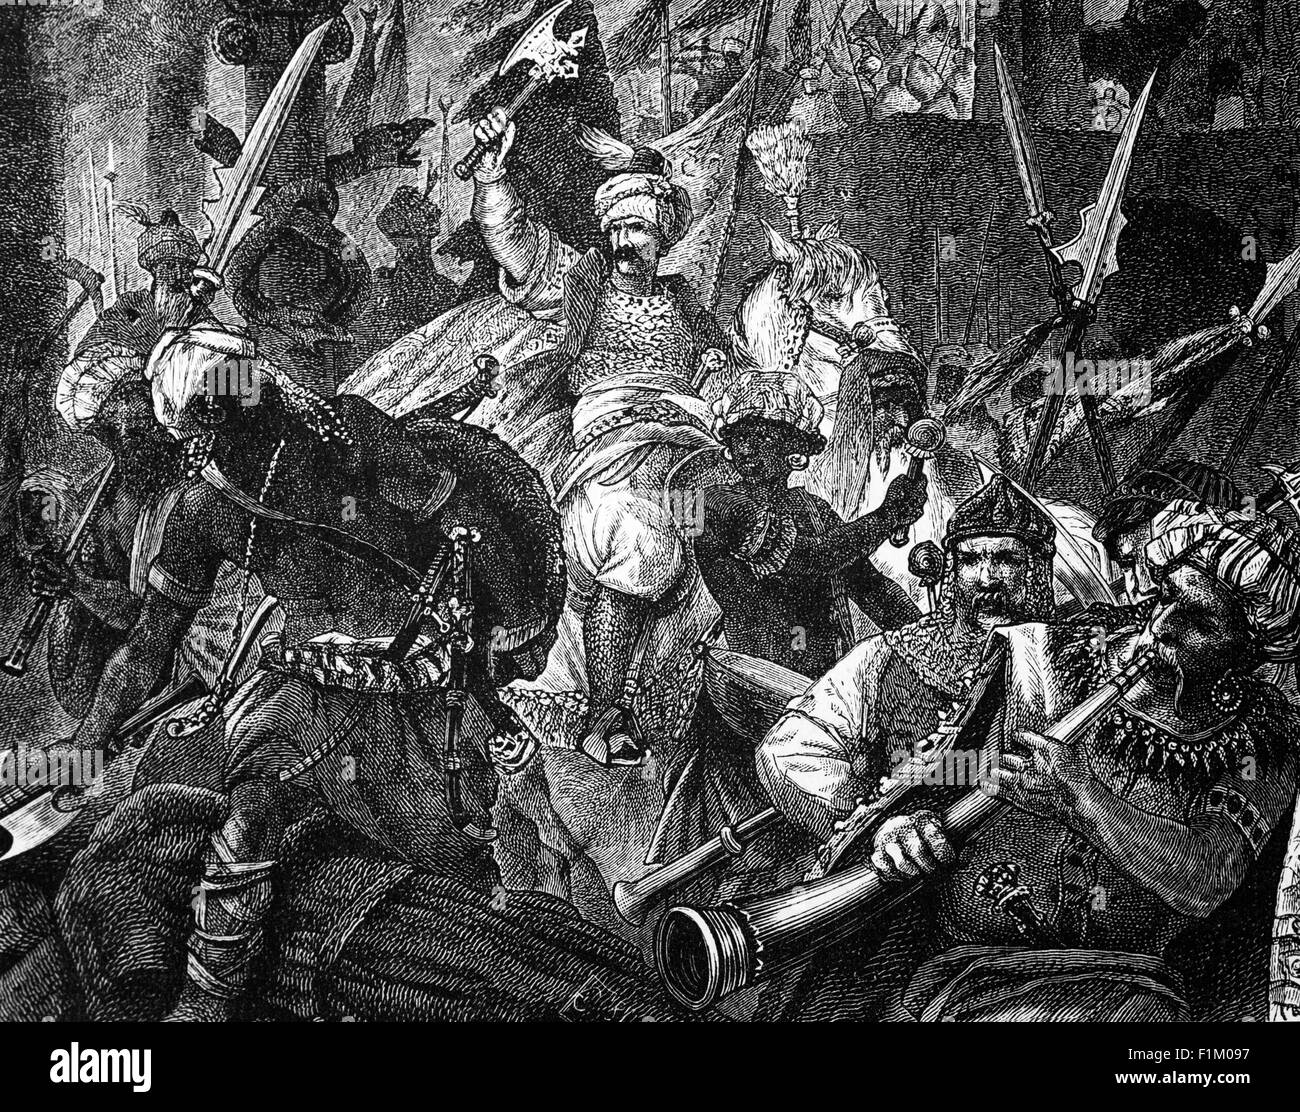 Die islamischen Mauren, die die Schlacht von Alcácer Quibir (AKA Alcassar und "Schlacht der drei Könige") gewonnen haben, kämpften am 4. August 1578 in Nordmarokko, in der Nähe der Stadt Ksar-el-Kebir. Die Kämpfer waren die Armee des abgesetzten marokkanischen Sultans Abu Abdallah Mohammed II, mit seinem Verbündeten, dem König von Portugal Sebastian I, gegen eine große marokkanische Armee unter dem neuen Sultan von Marokko (und Onkel von Abu Abdallah Mohammed II) Abd Al-Malik I. Stockfoto